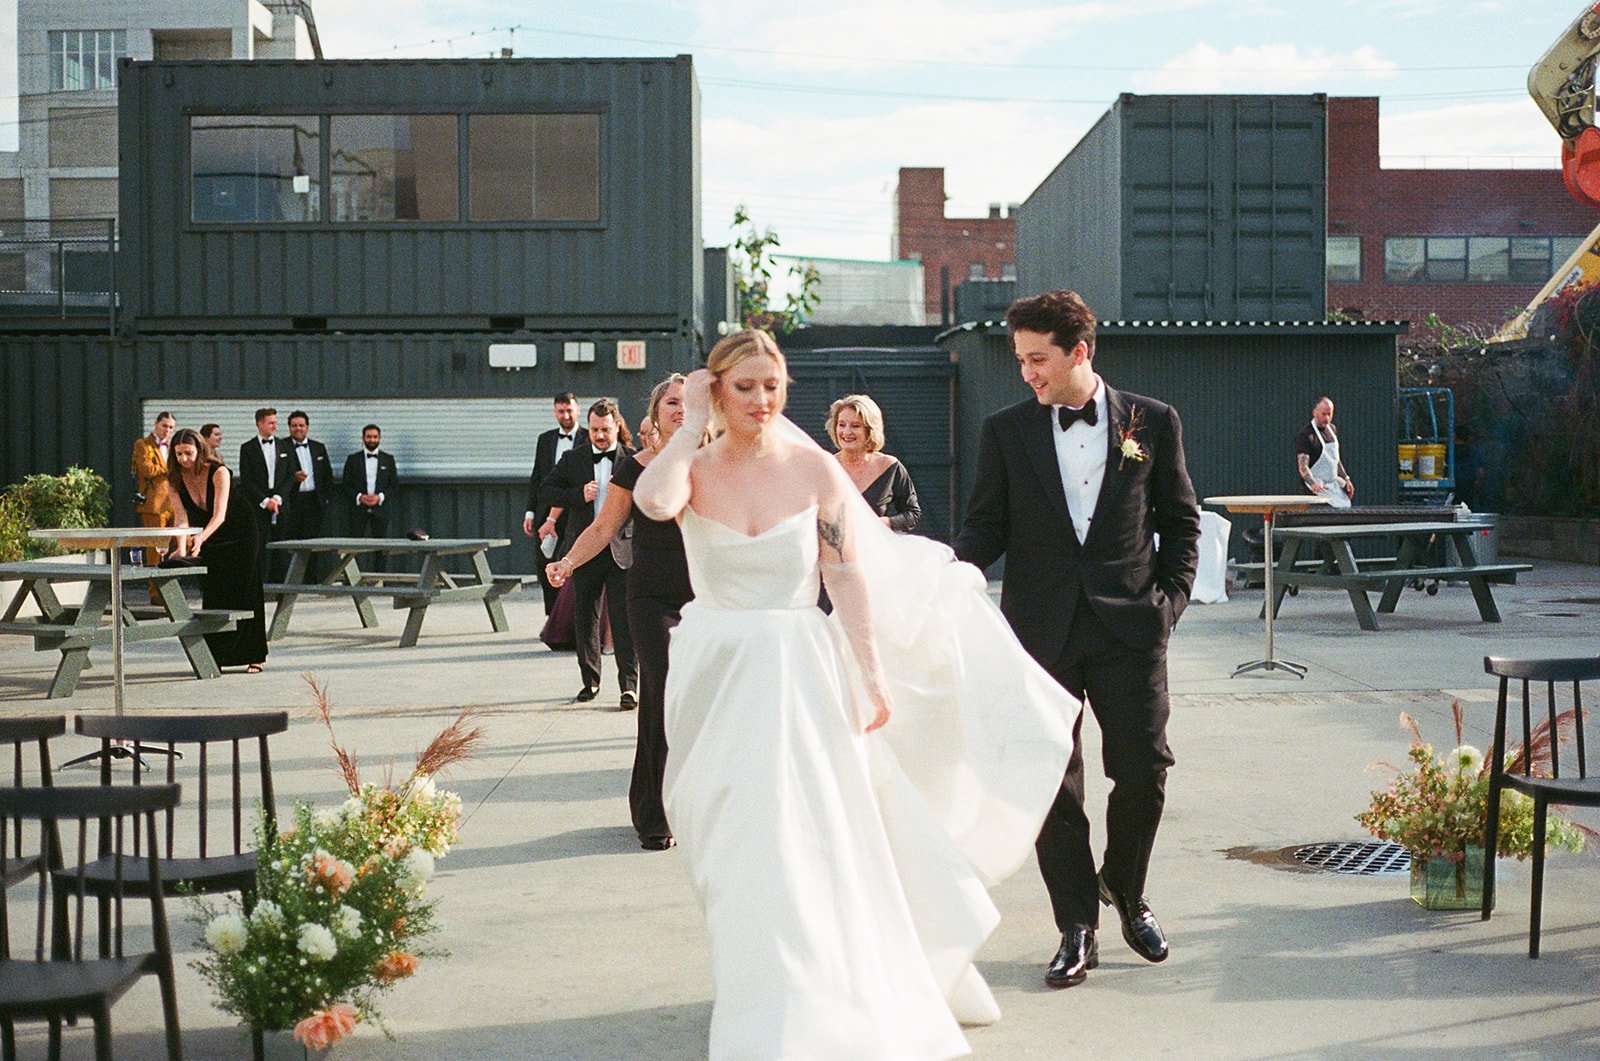 Fall wedding in Bushwick, NY | BLB Events | Trendy Industrial Wedding | Wedding Planner 